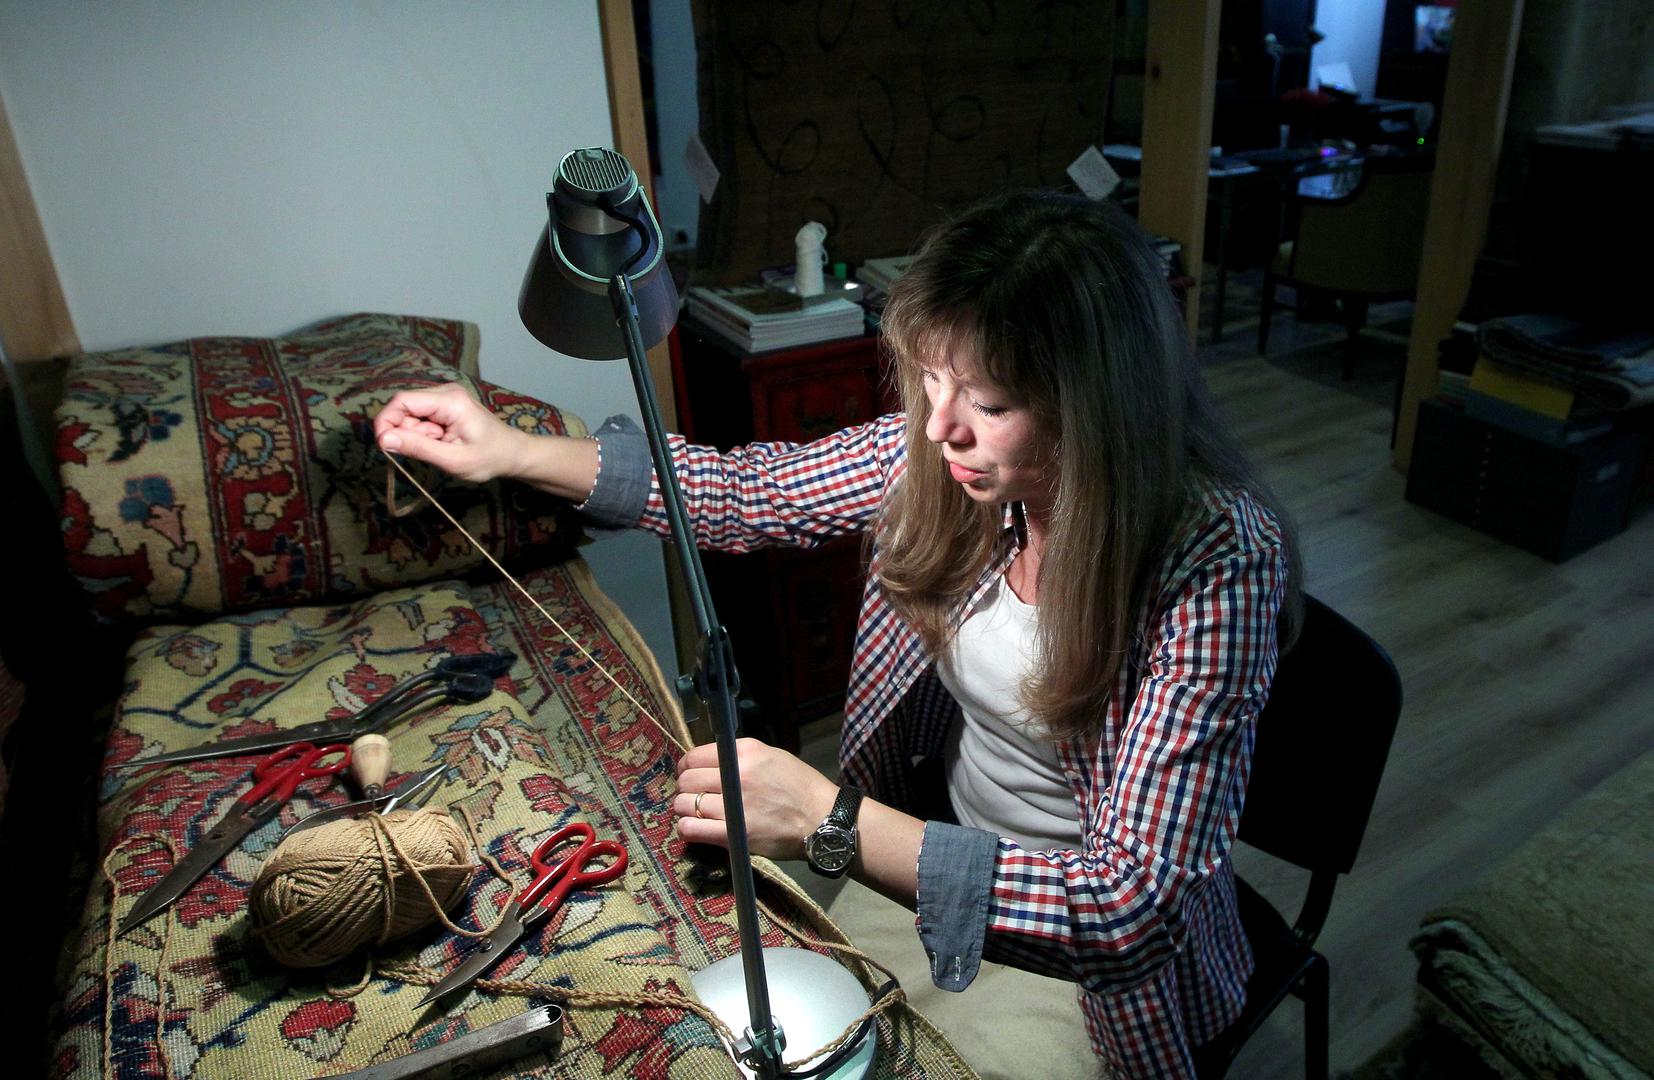 Lidija Osmak jedina je žena koja popravvlja tepihe u Hrvatskoj. Svoj posao opisuje kao pomalo monoton, ali vrlo zadovoljavajući.

